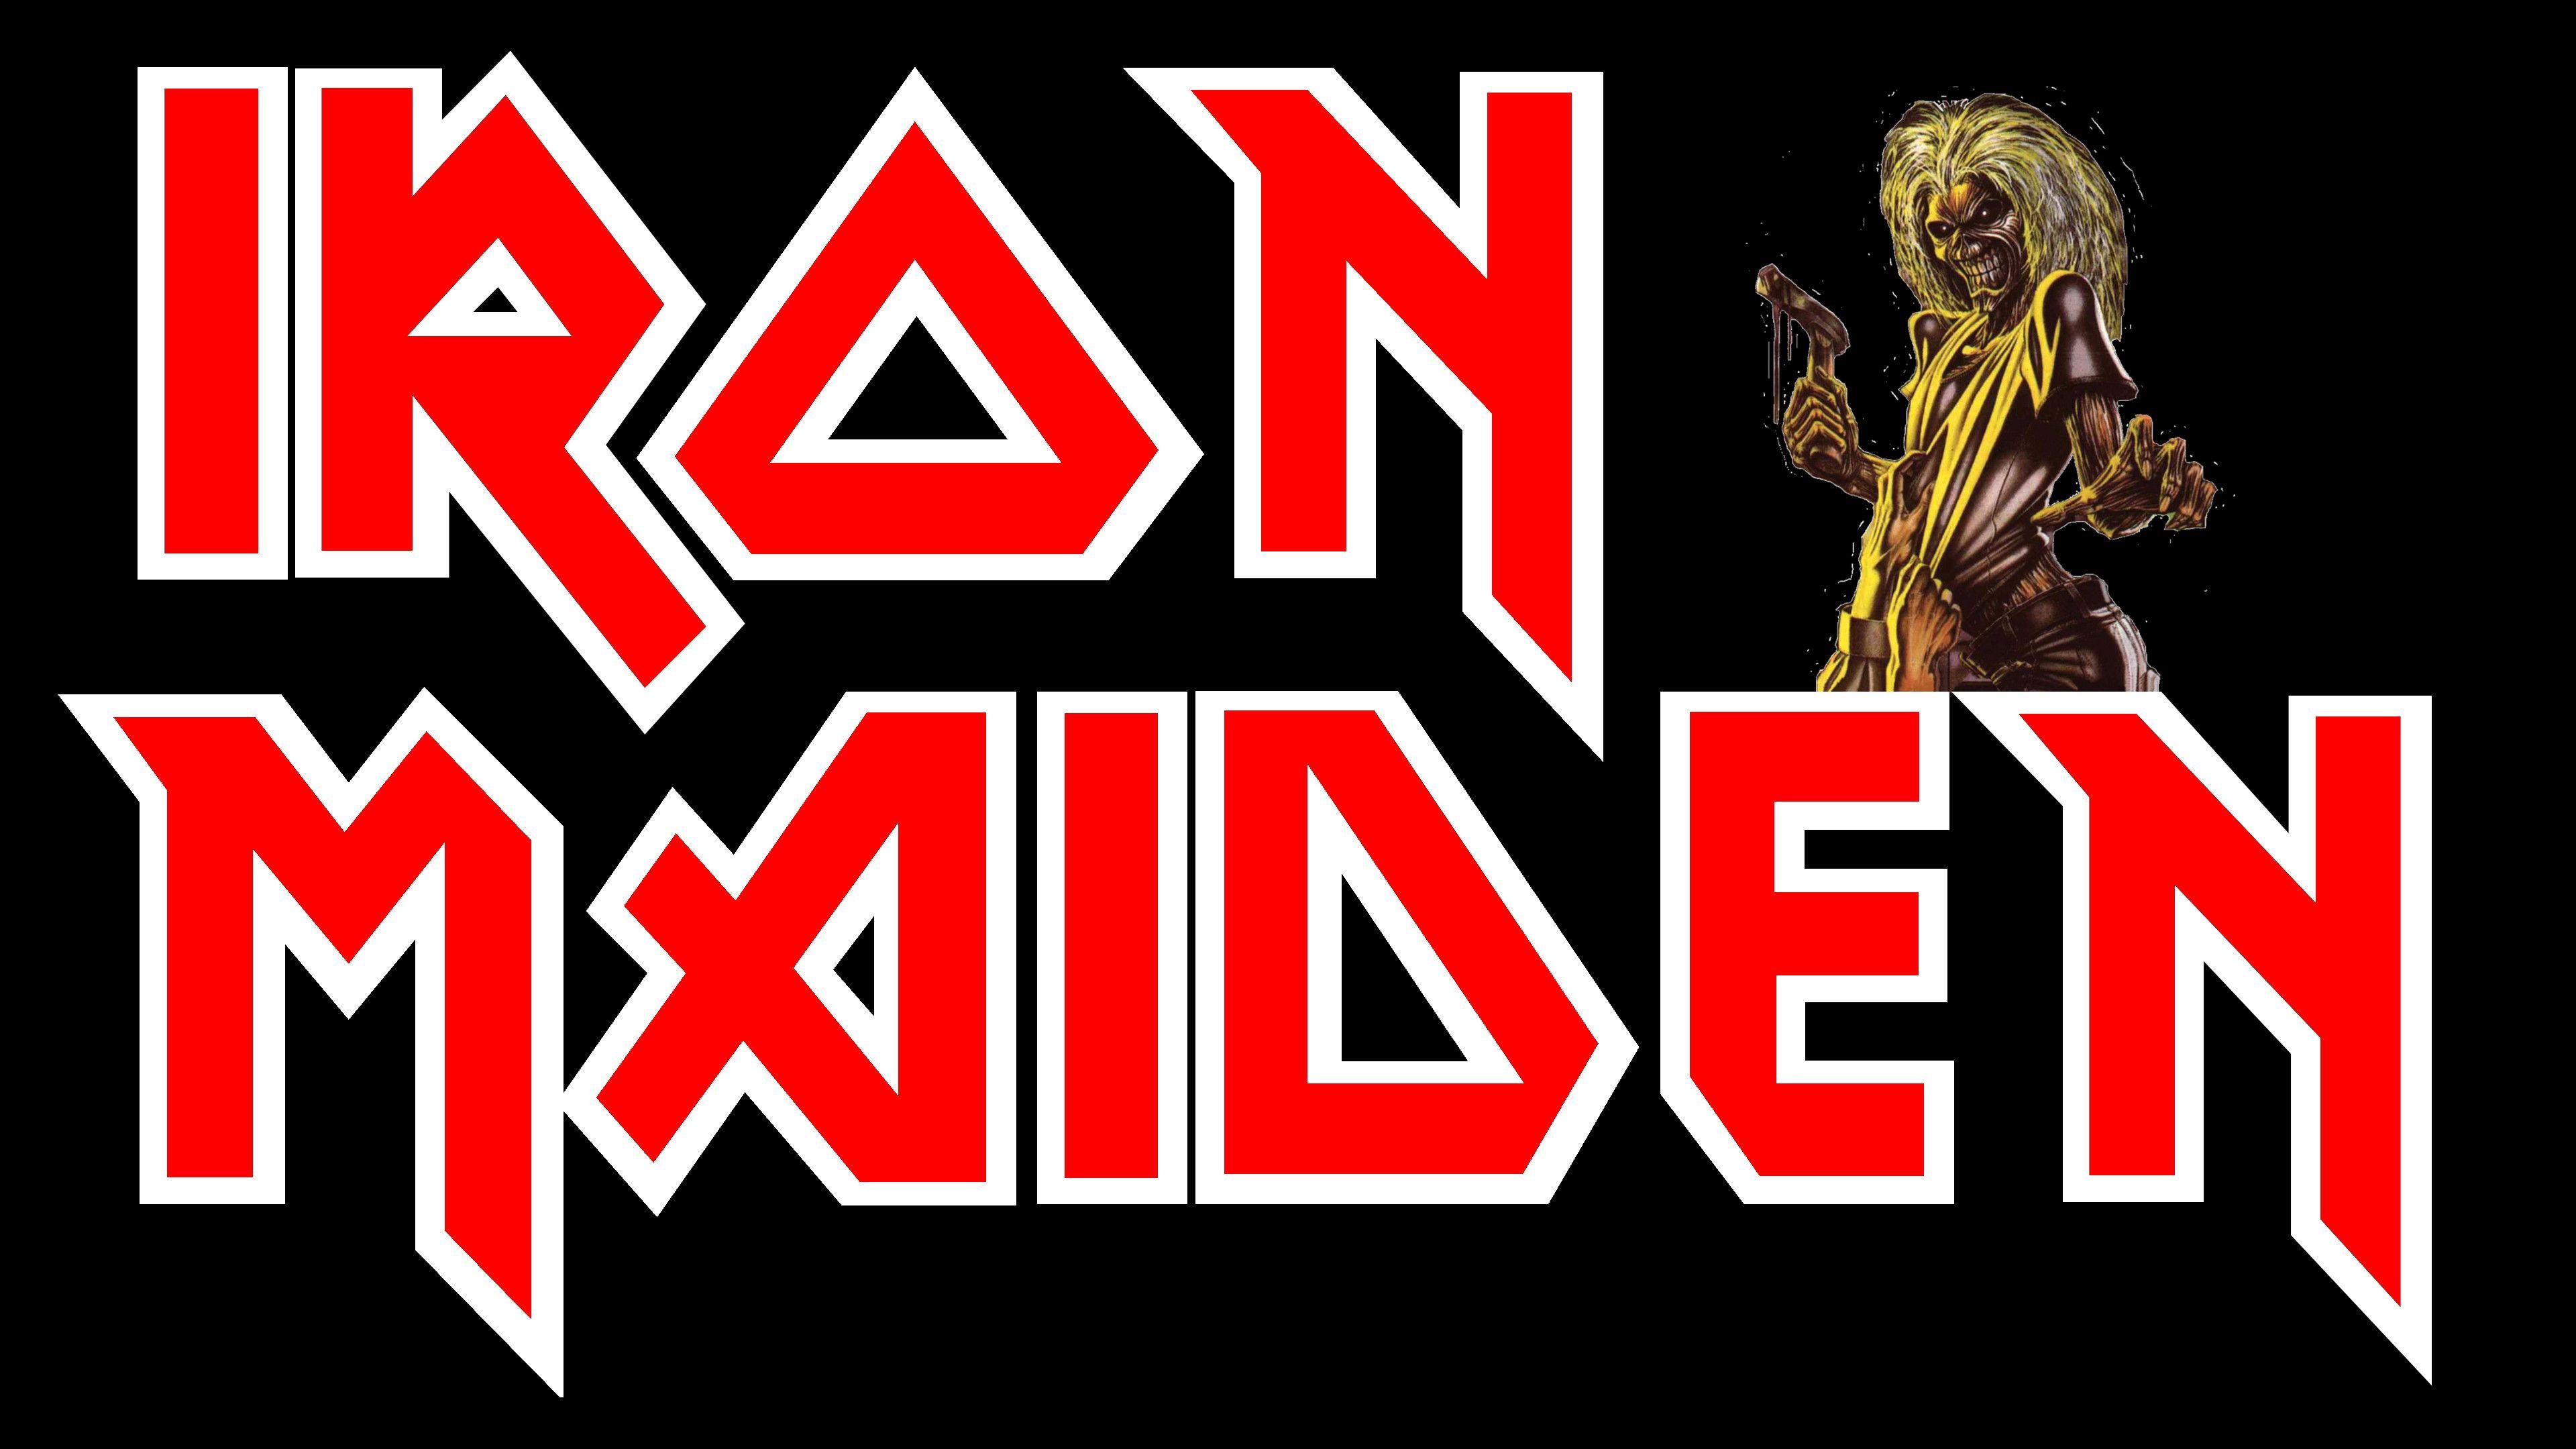 Iron Maiden Eddie Stark 4k 4k Ultra HD Wallpaper and Background